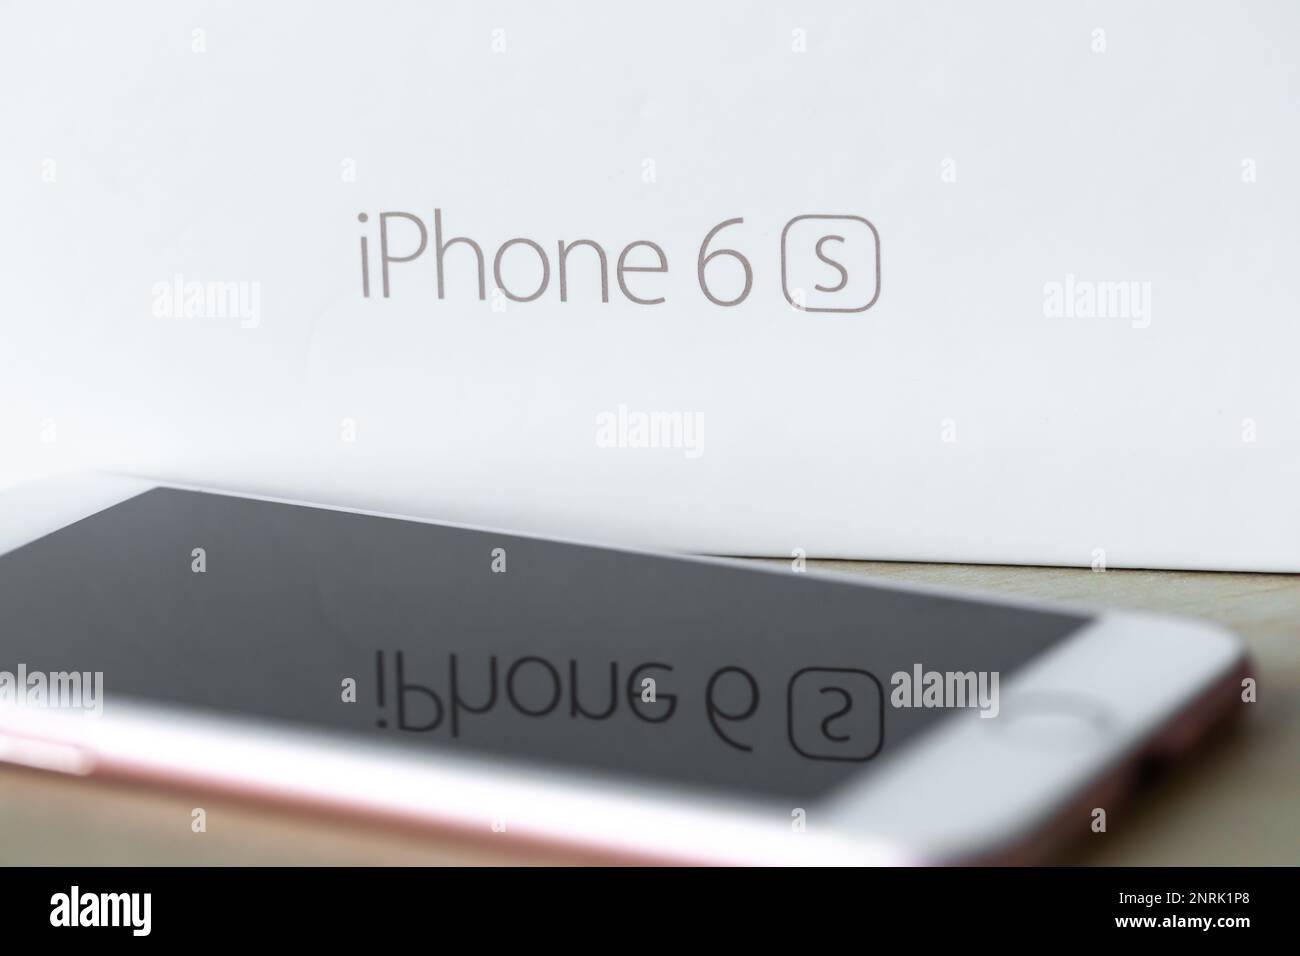 iPhone 6s smartphone Stock Photo